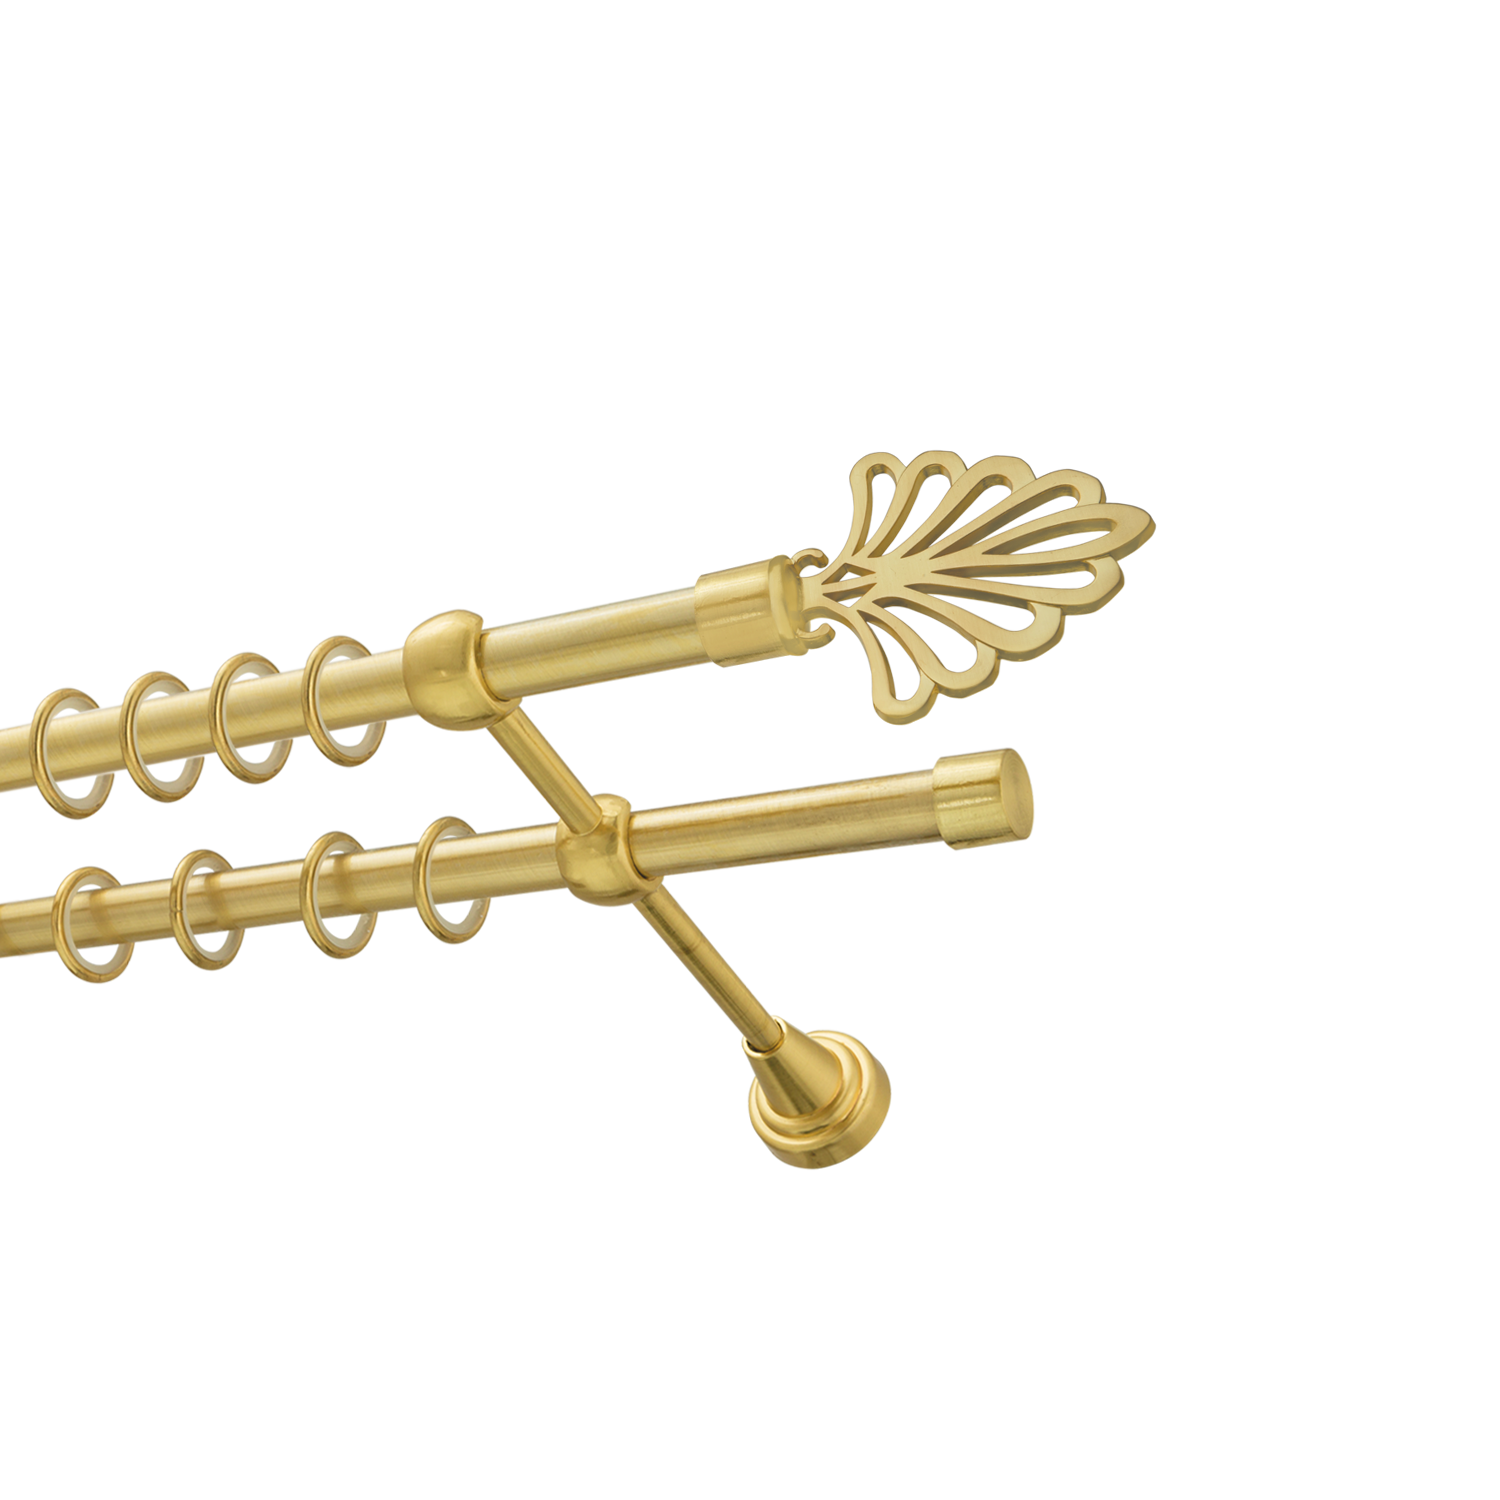 Металлический карниз для штор Бутик, двухрядный 16/16 мм, золото, гладкая штанга, длина 240 см - фото Wikidecor.ru